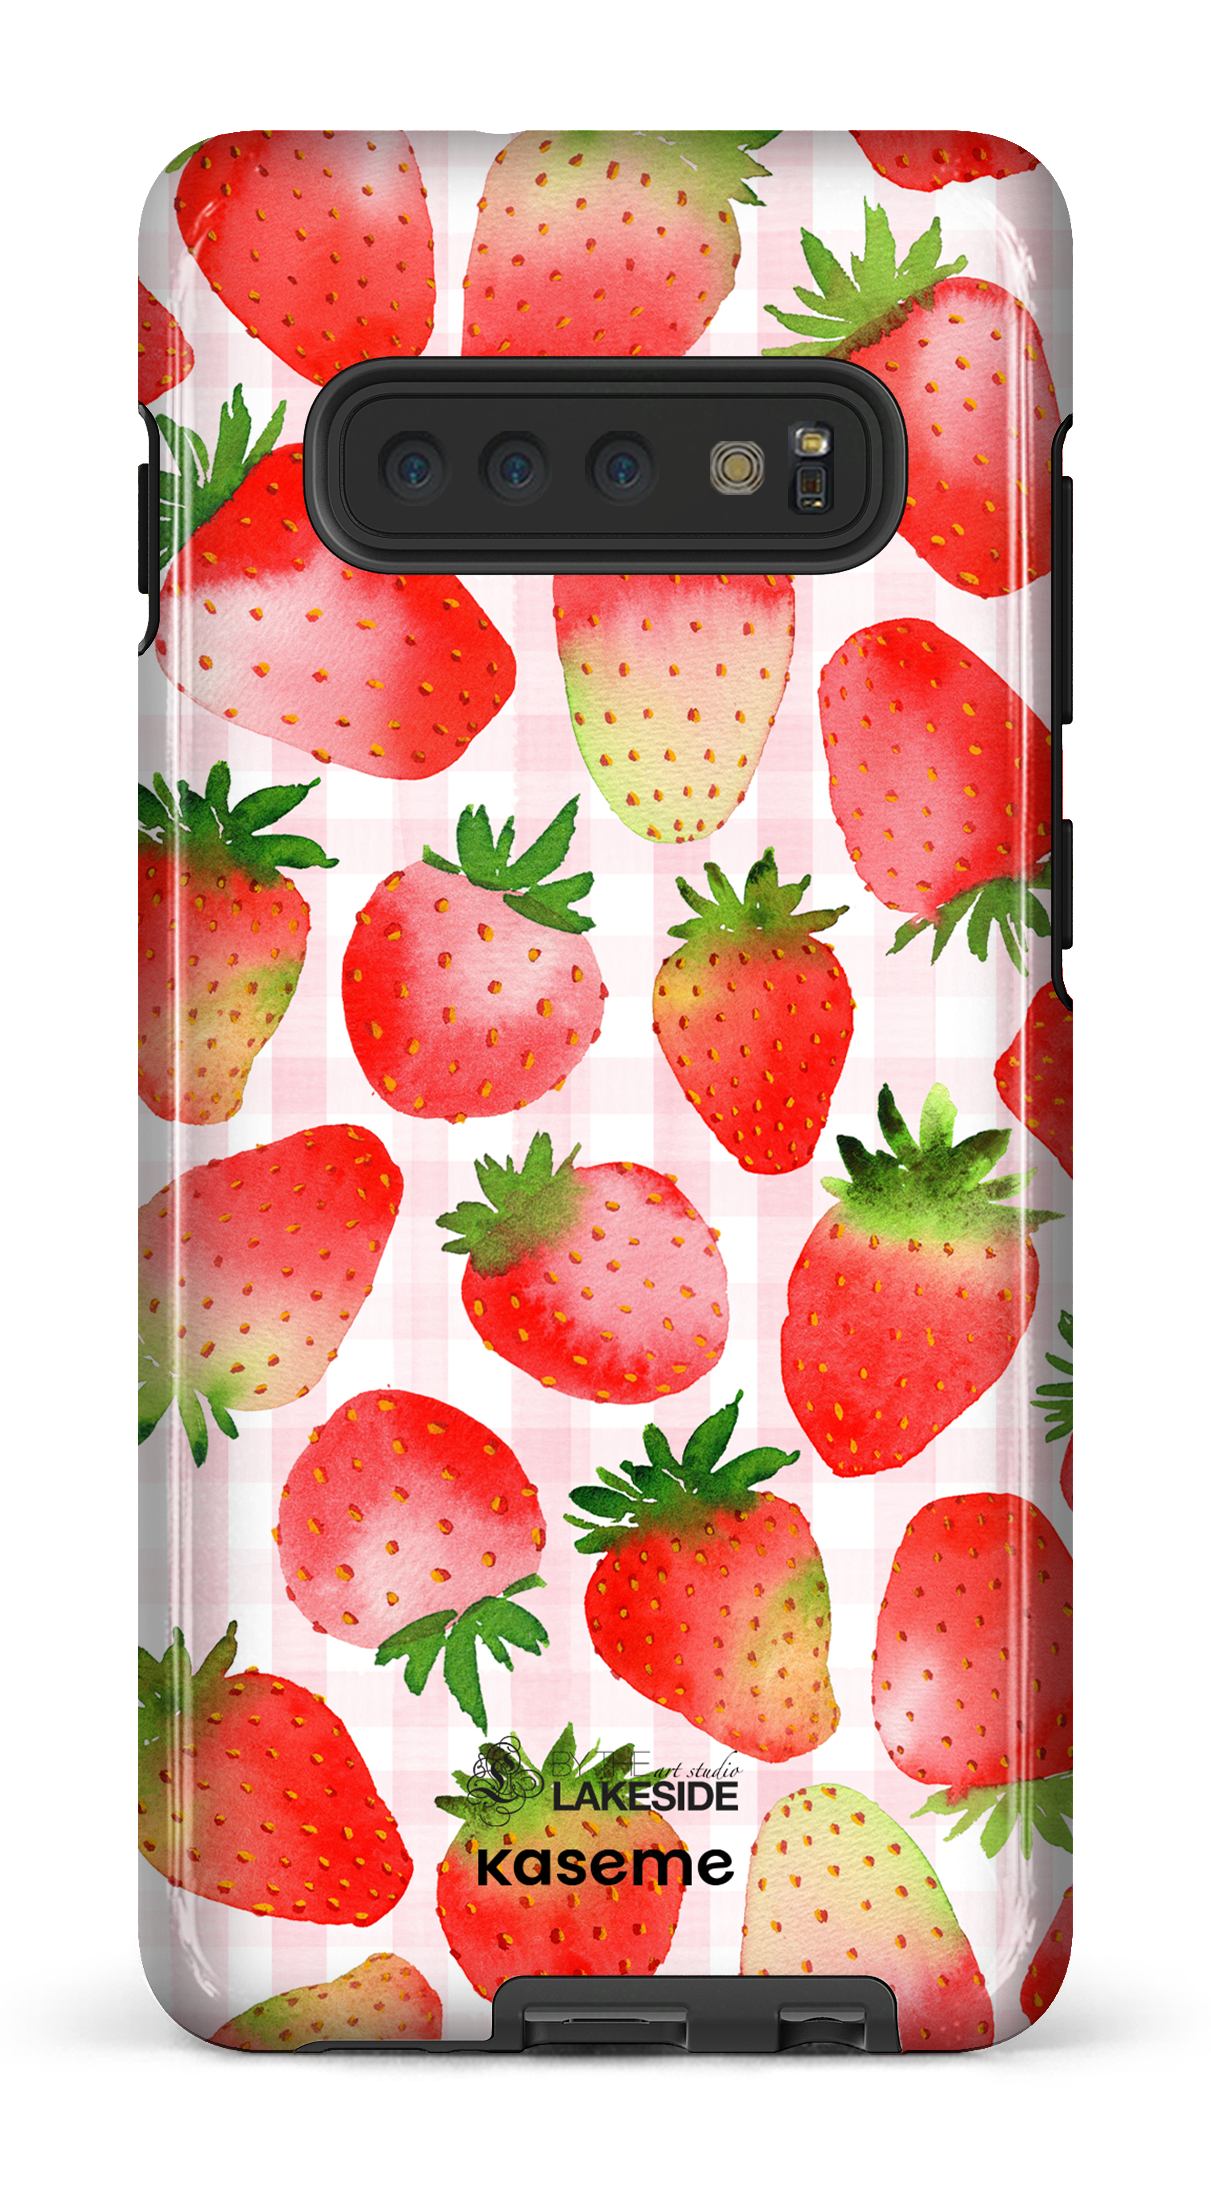 Strawberry Fields by Pooja Umrani - Galaxy S10 Plus